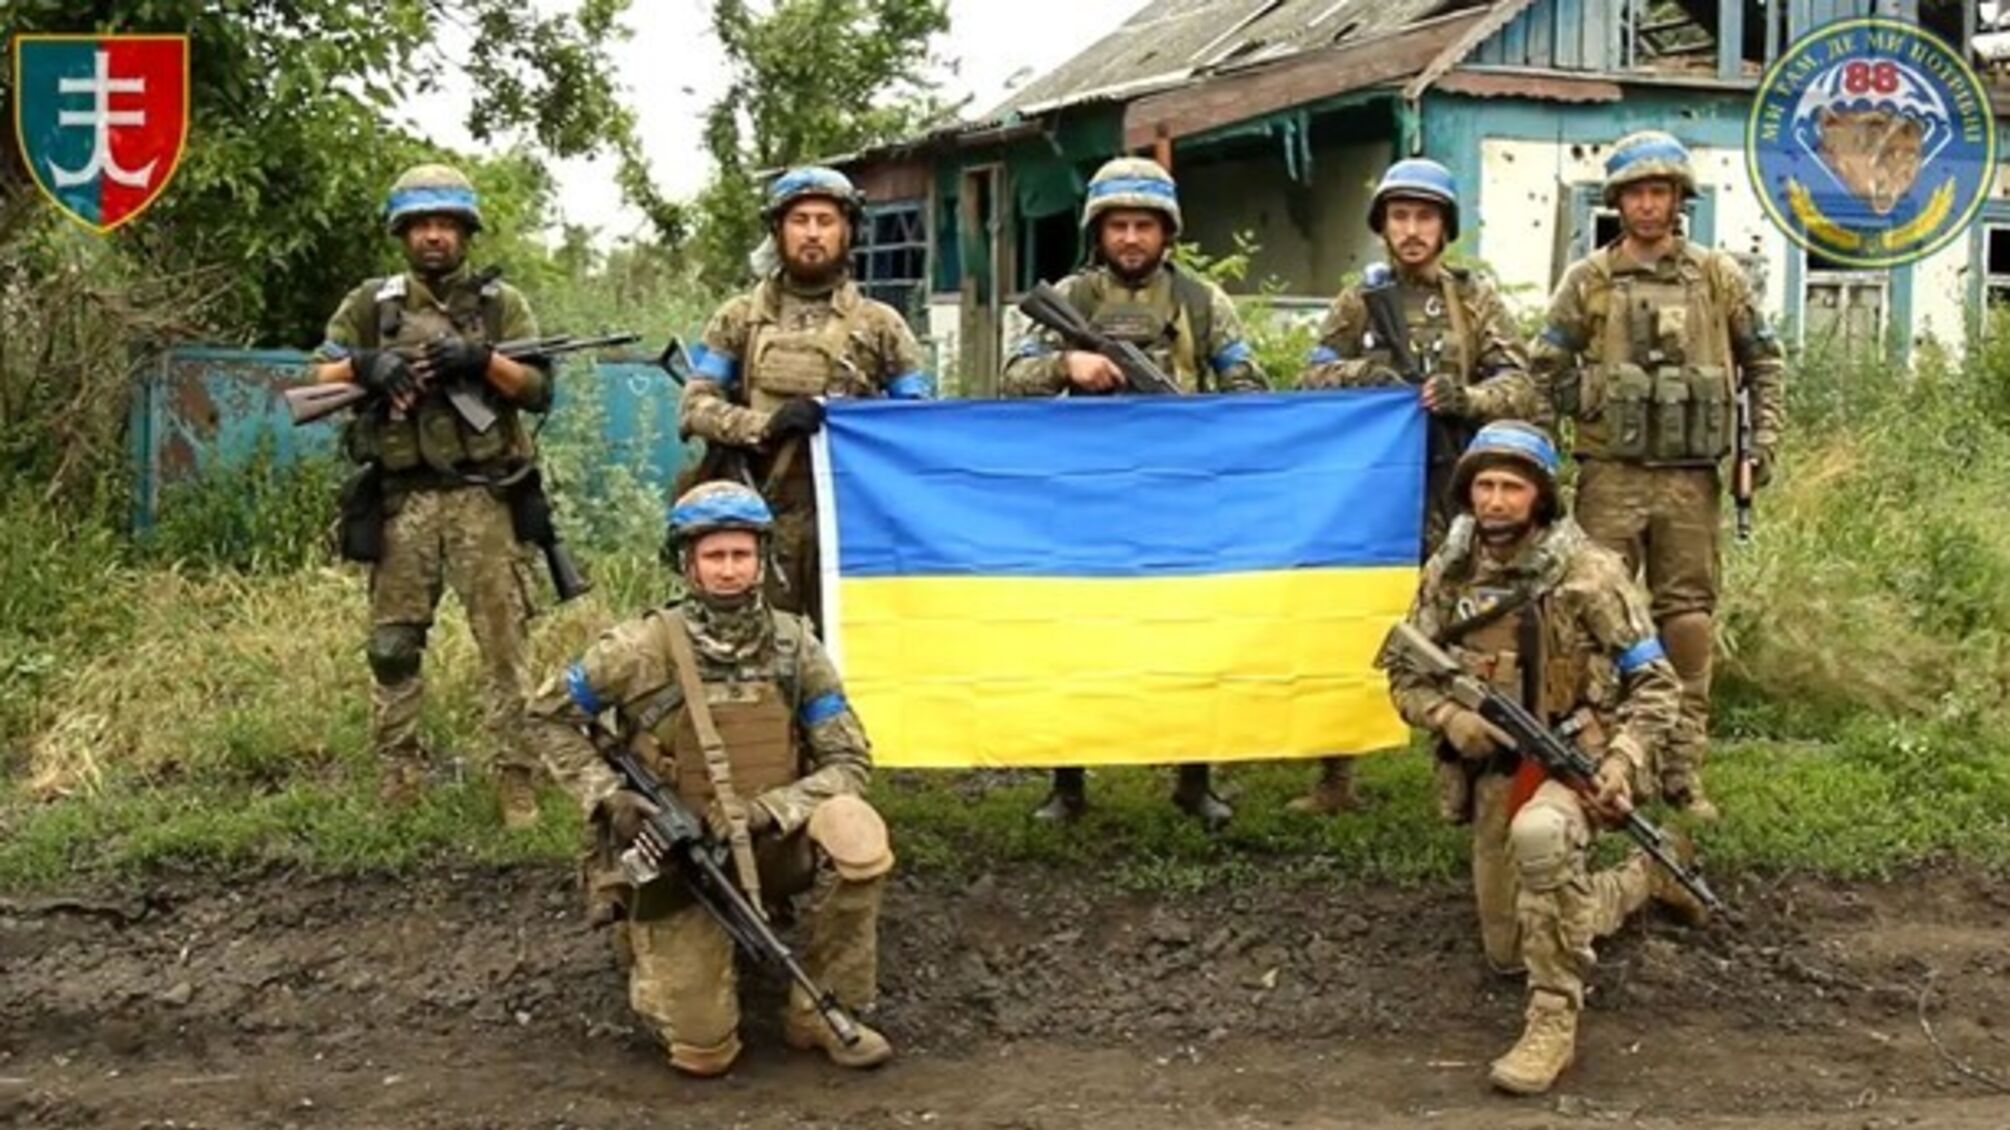 ВСУ освободили еще одну деревню от россиян: украинский флаг снова развевается над Сторожевым (видео)